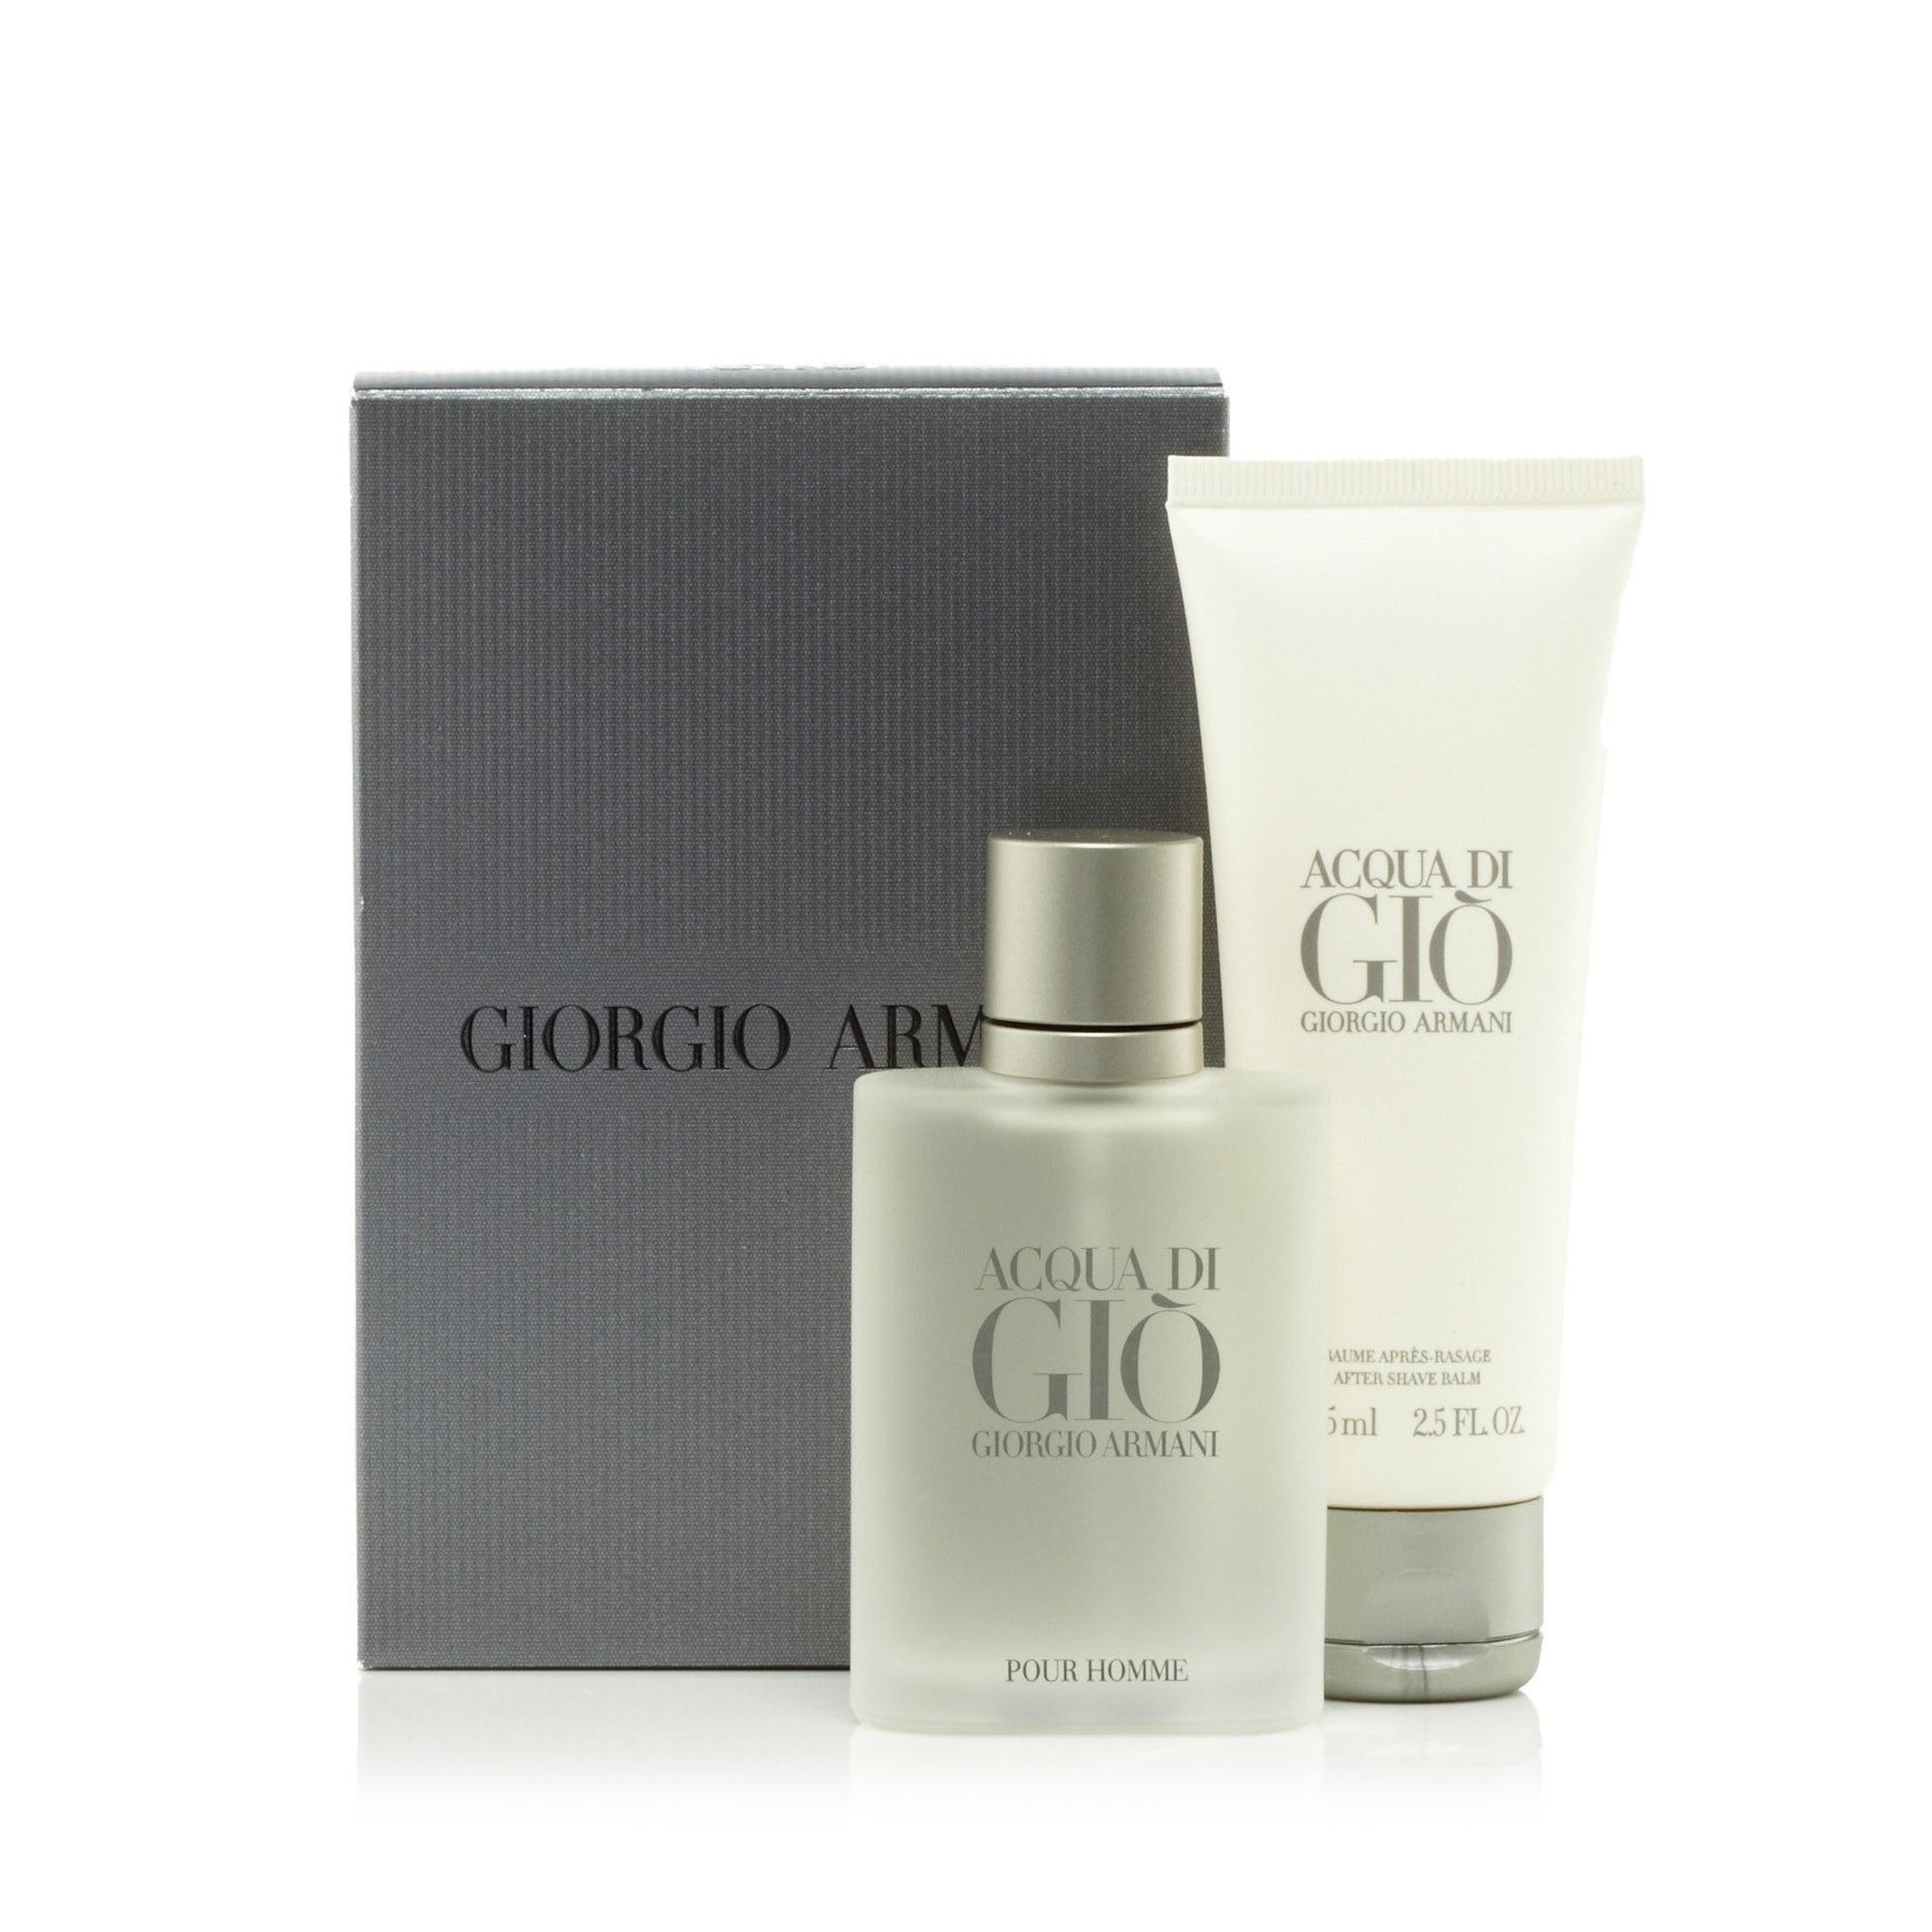 Acqua Di Gio Gift Set for Men by Giorgio Armani 1.7 oz. Click to open in modal